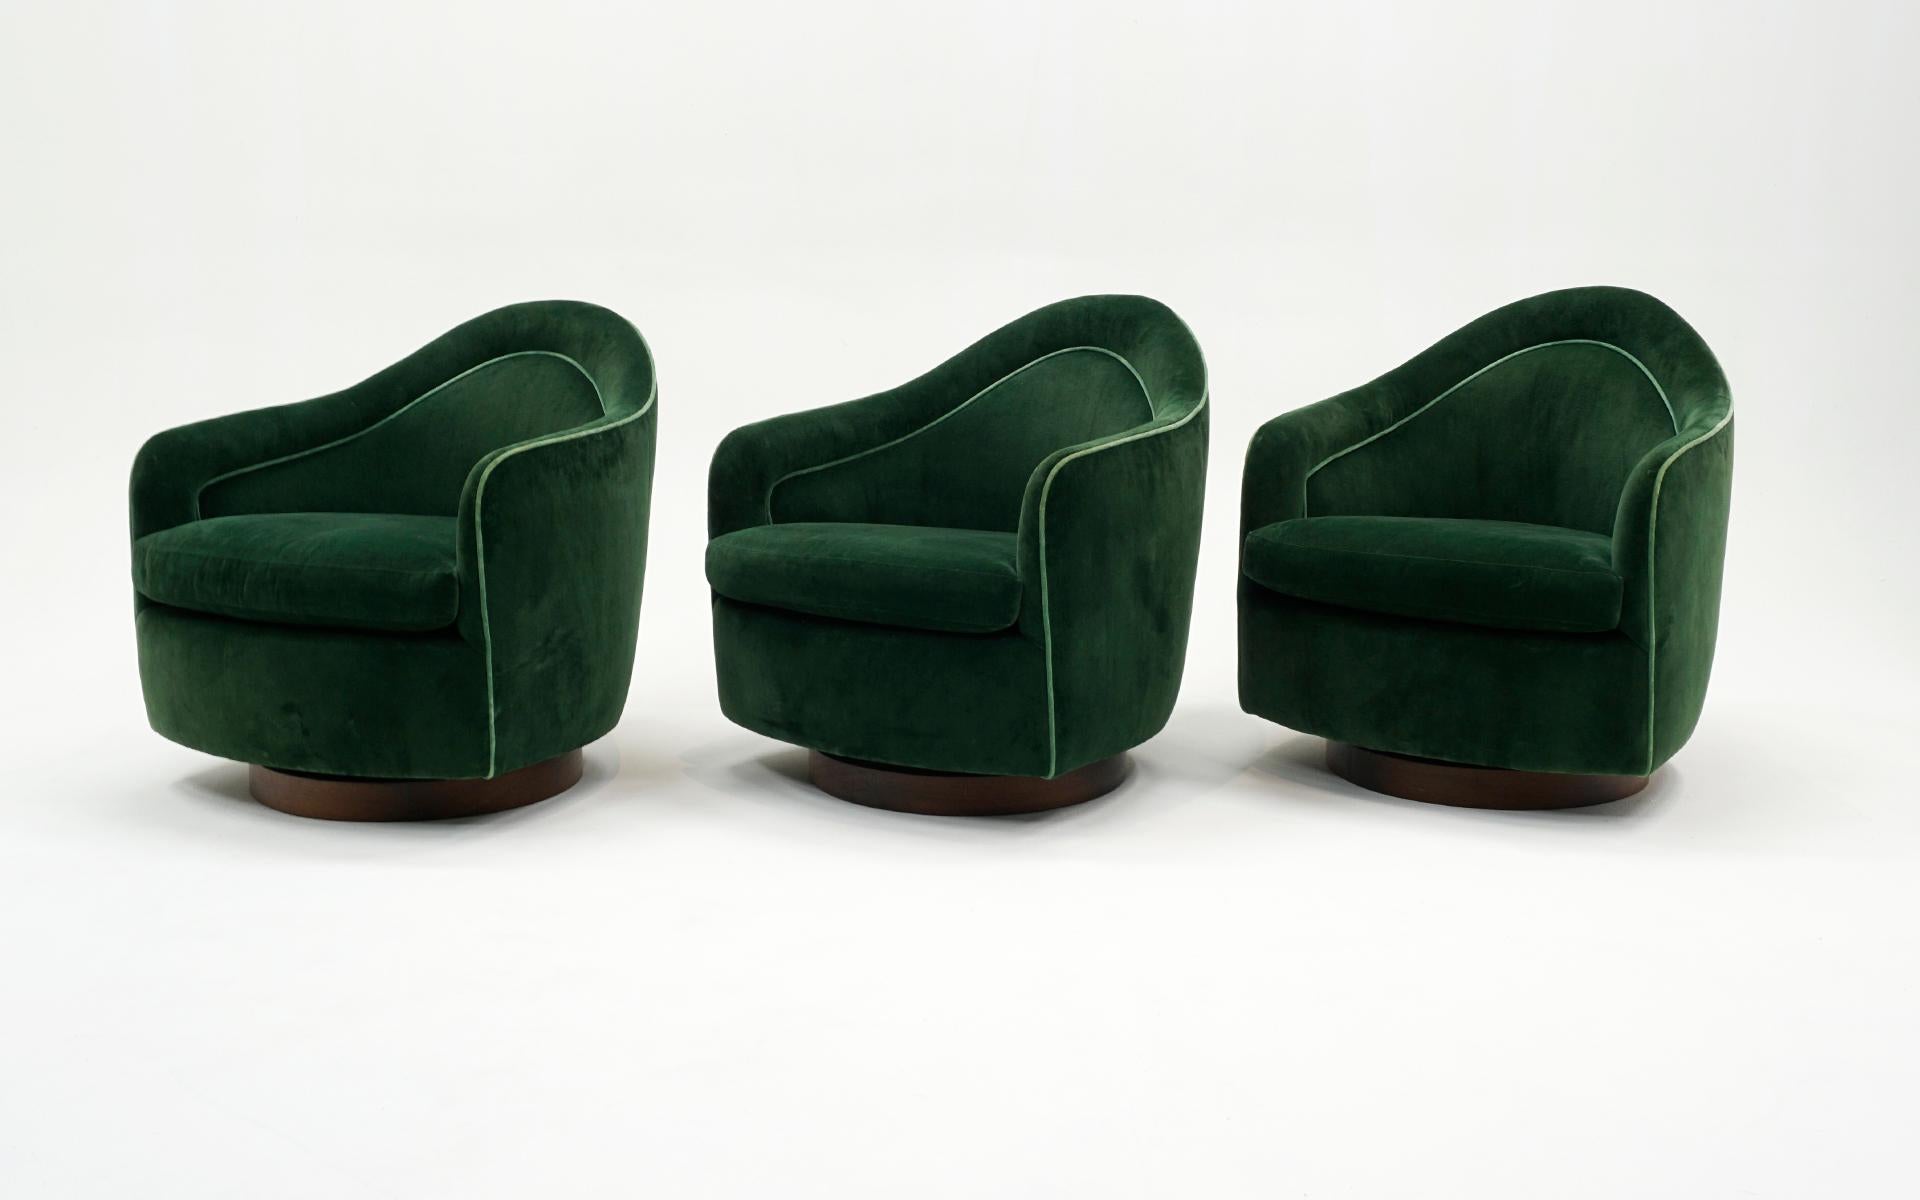 Sechs Milo Baughman. Hochlehnige, neigbare und drehbare Loungesessel. New Green Polstermöbel. (amerikanisch)